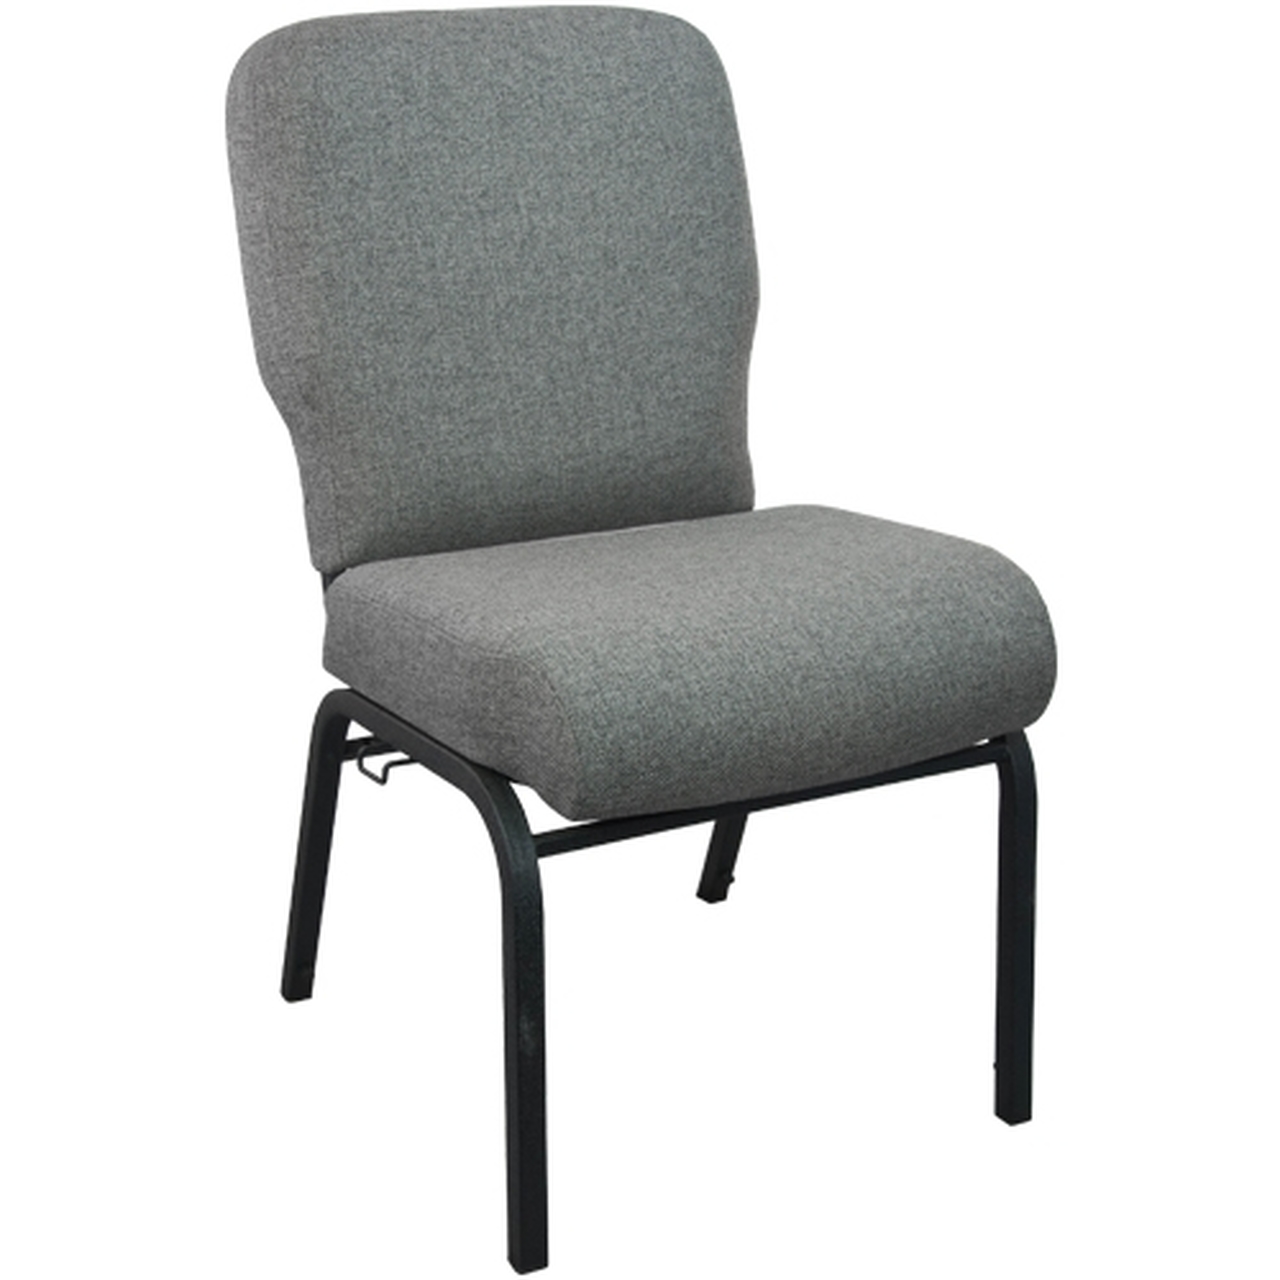 Advantage Chair PCRCB-111 Sale